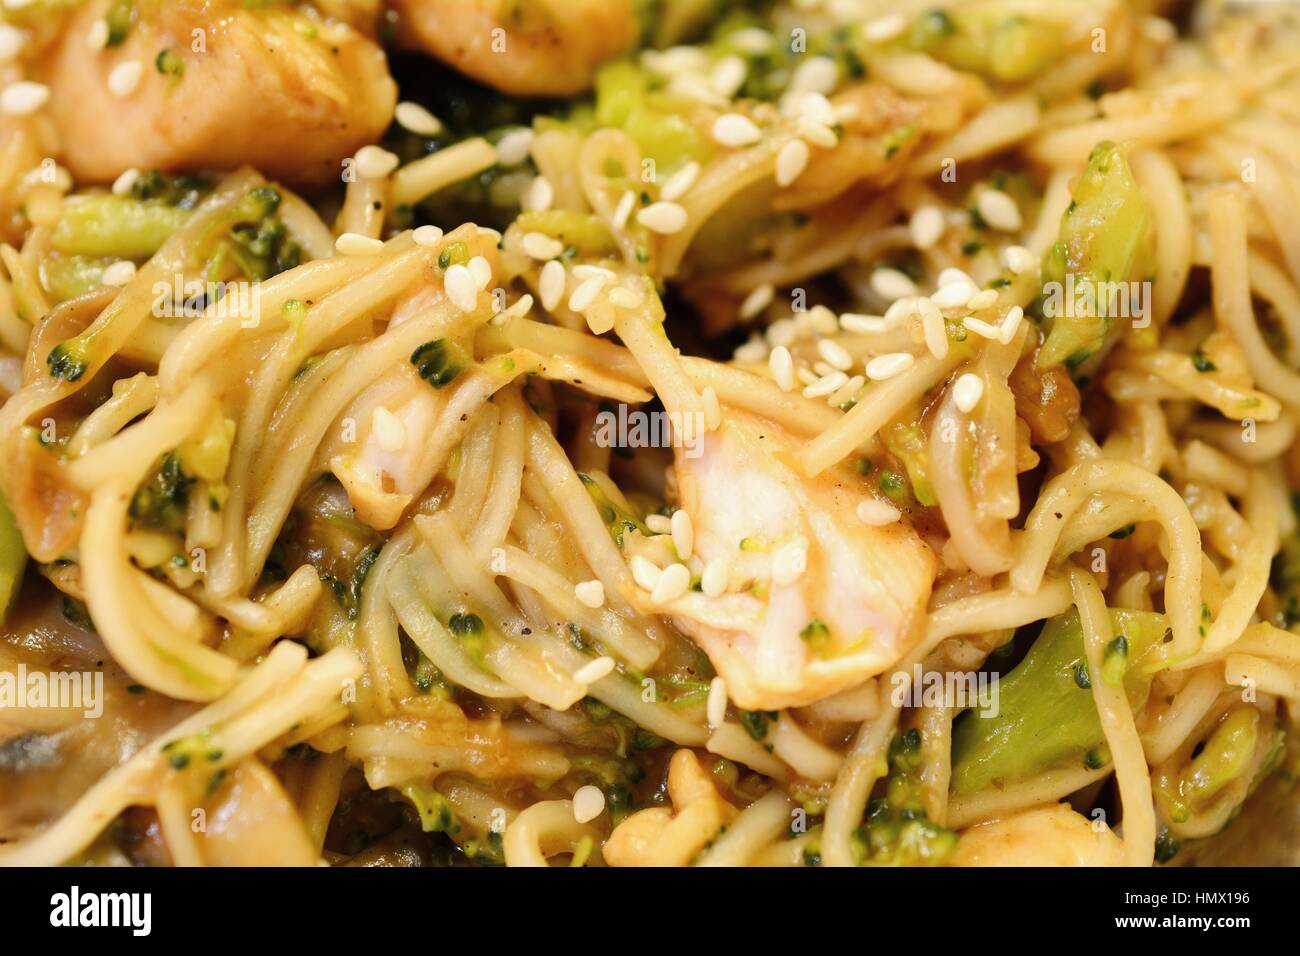 La viande de poulet avec des nouilles chinoises, le brocoli et les légumes. Banque D'Images